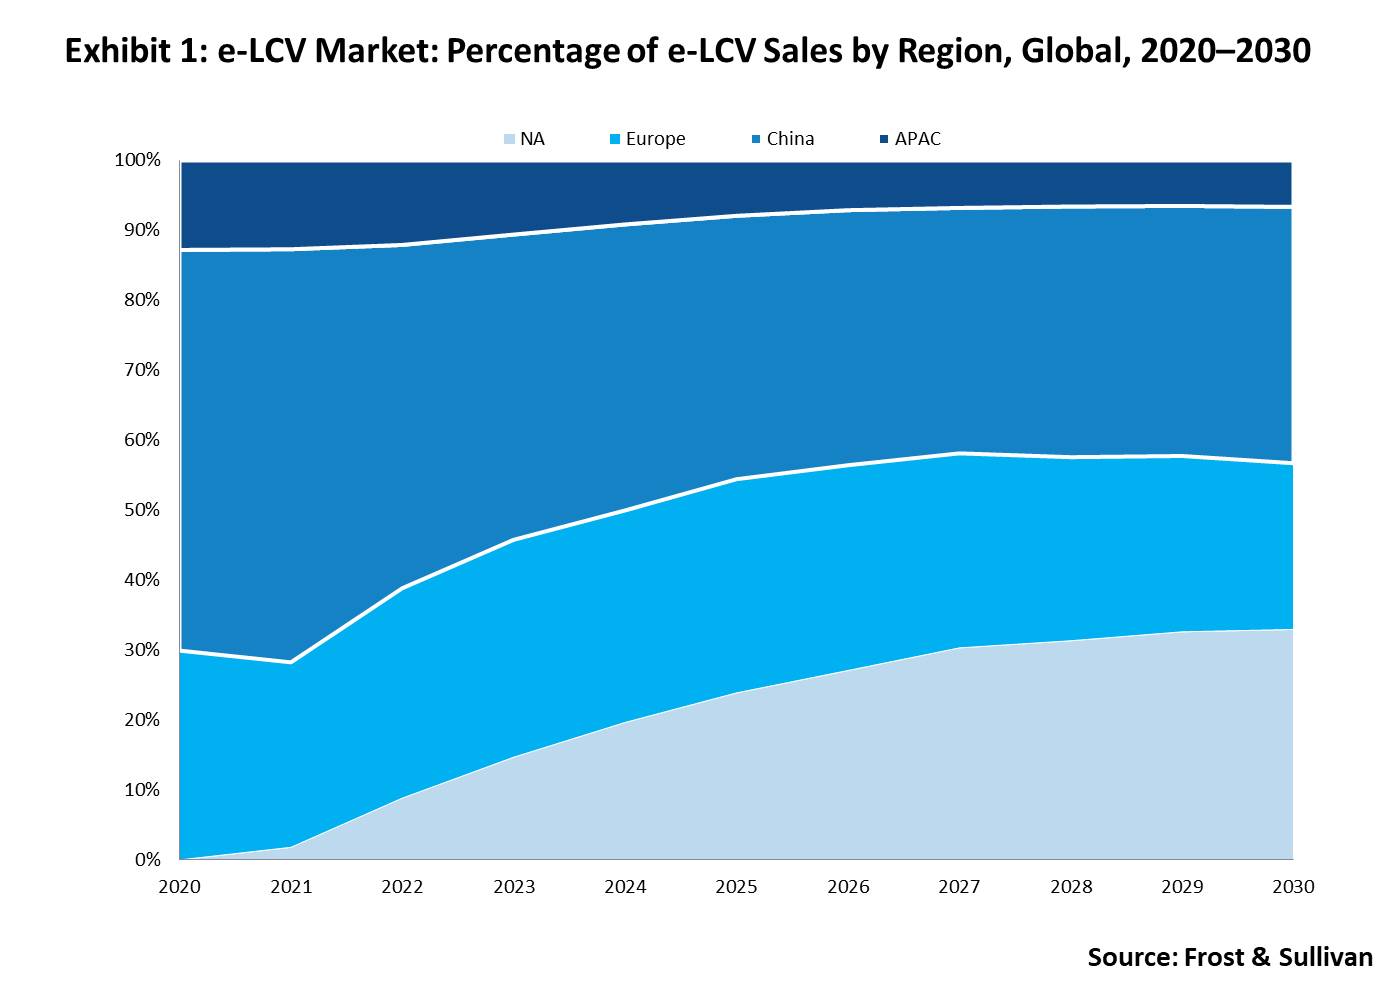 e-LCV sales by region